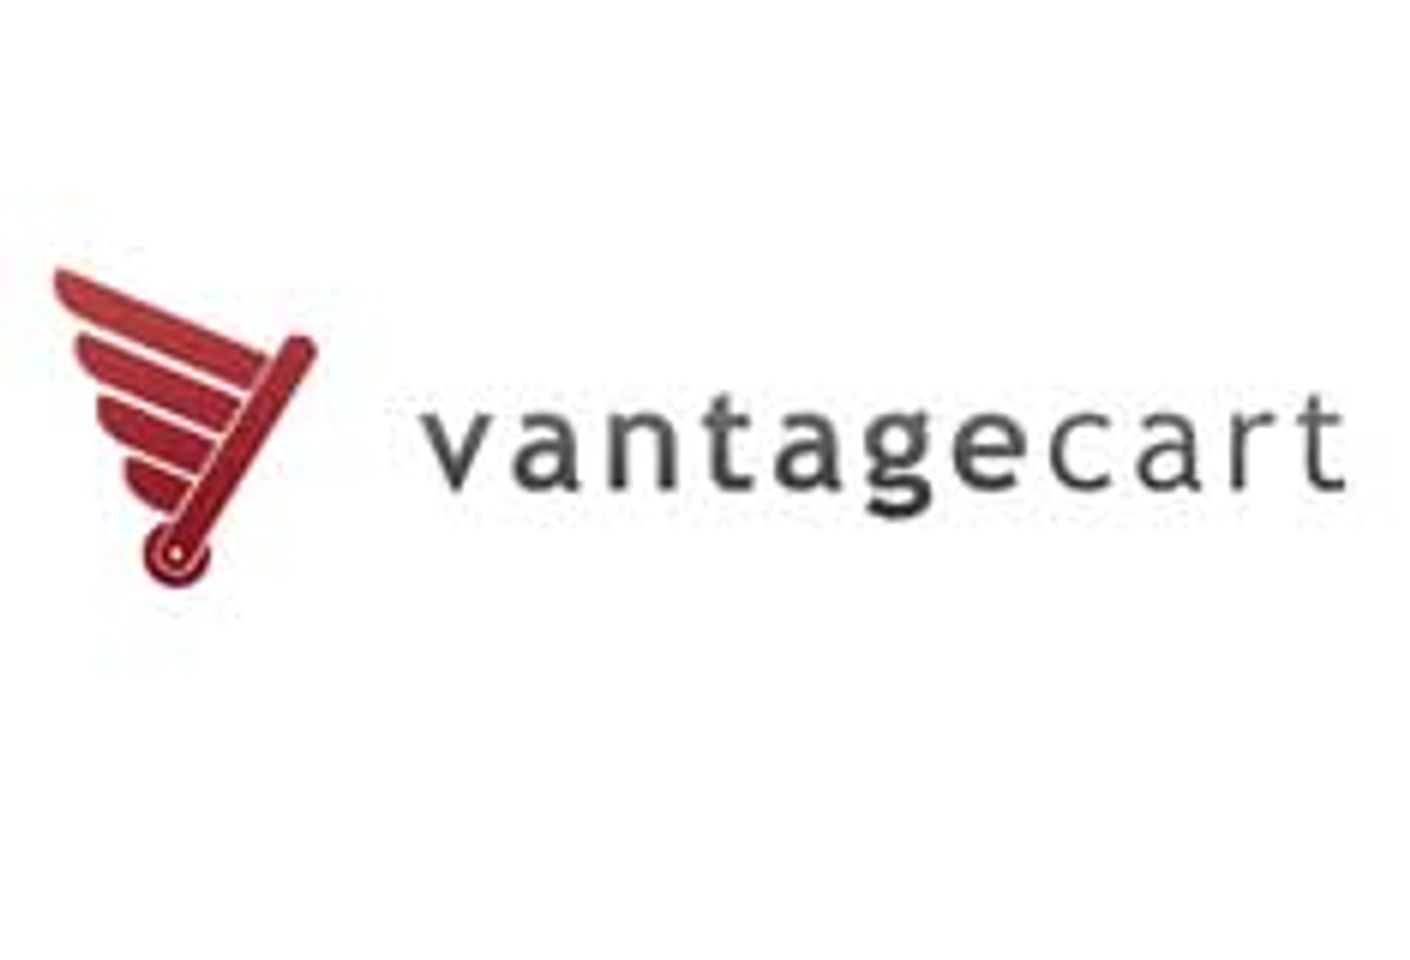 Red Apple Media Debuts ‘VantageCart’ E-Commerce, Accounting App